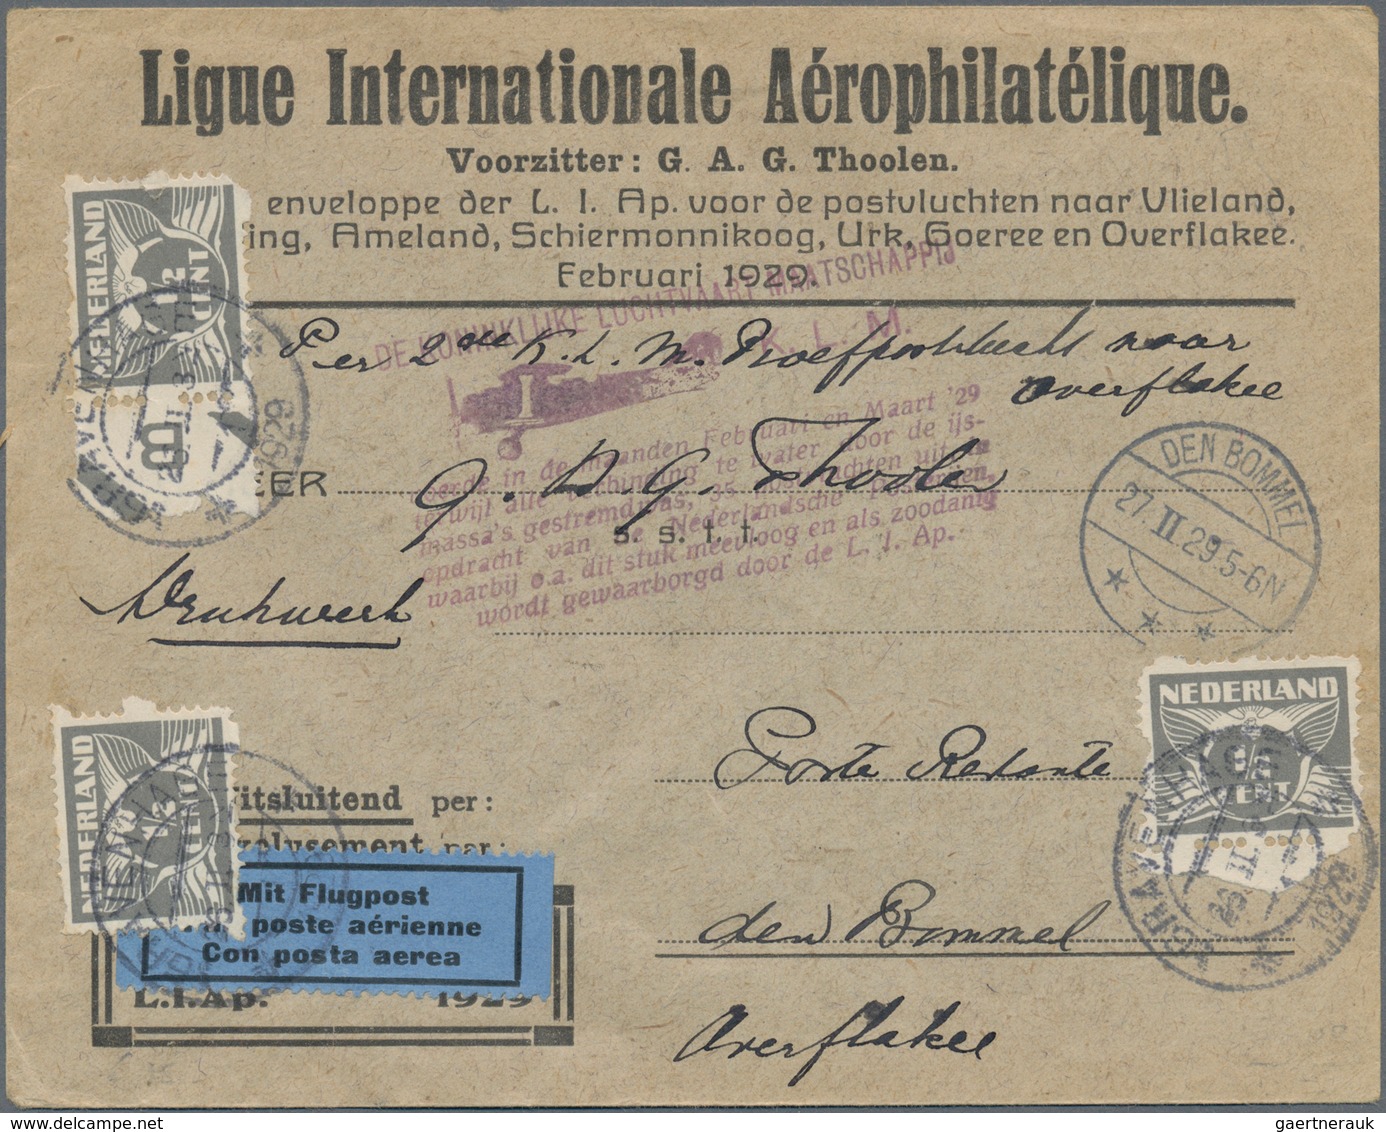 Niederlande: 18670/1970 (ca.), holding of several hundred covers/cards, incl. registered, censored a